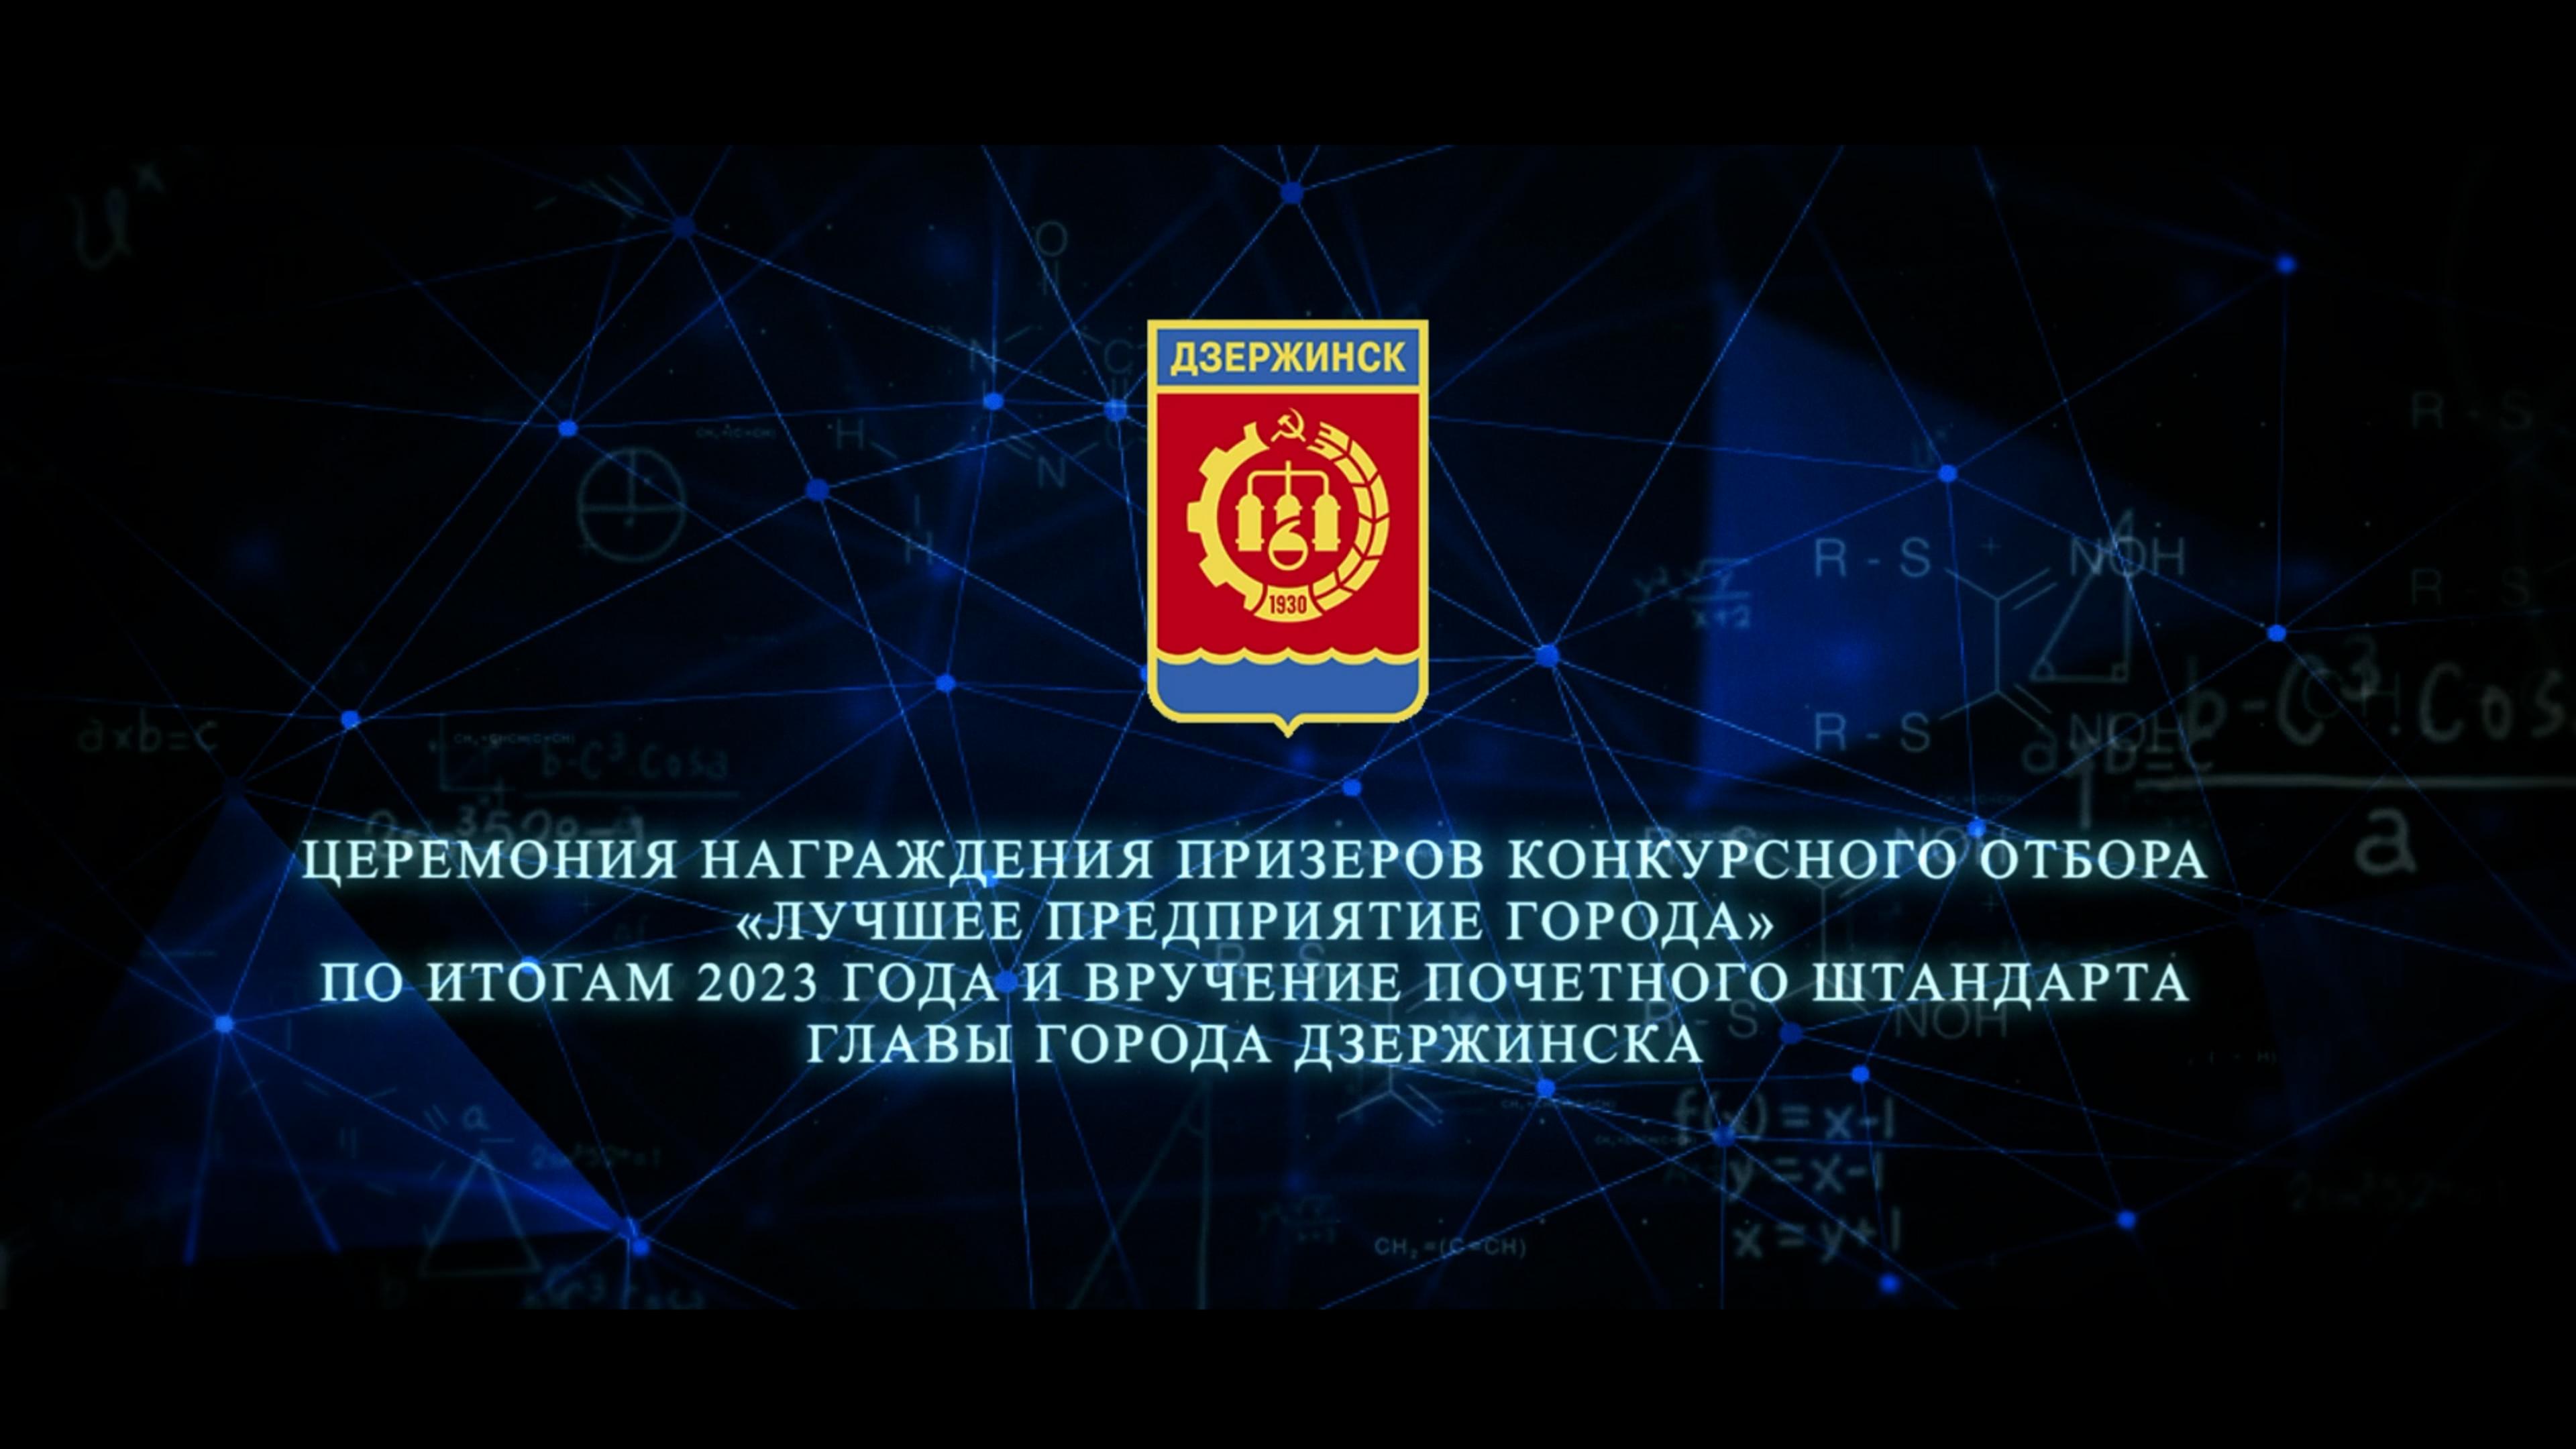 Церемонию вручения Почетного штандарта главы города Дзержинска смотрите в прямой трансляции